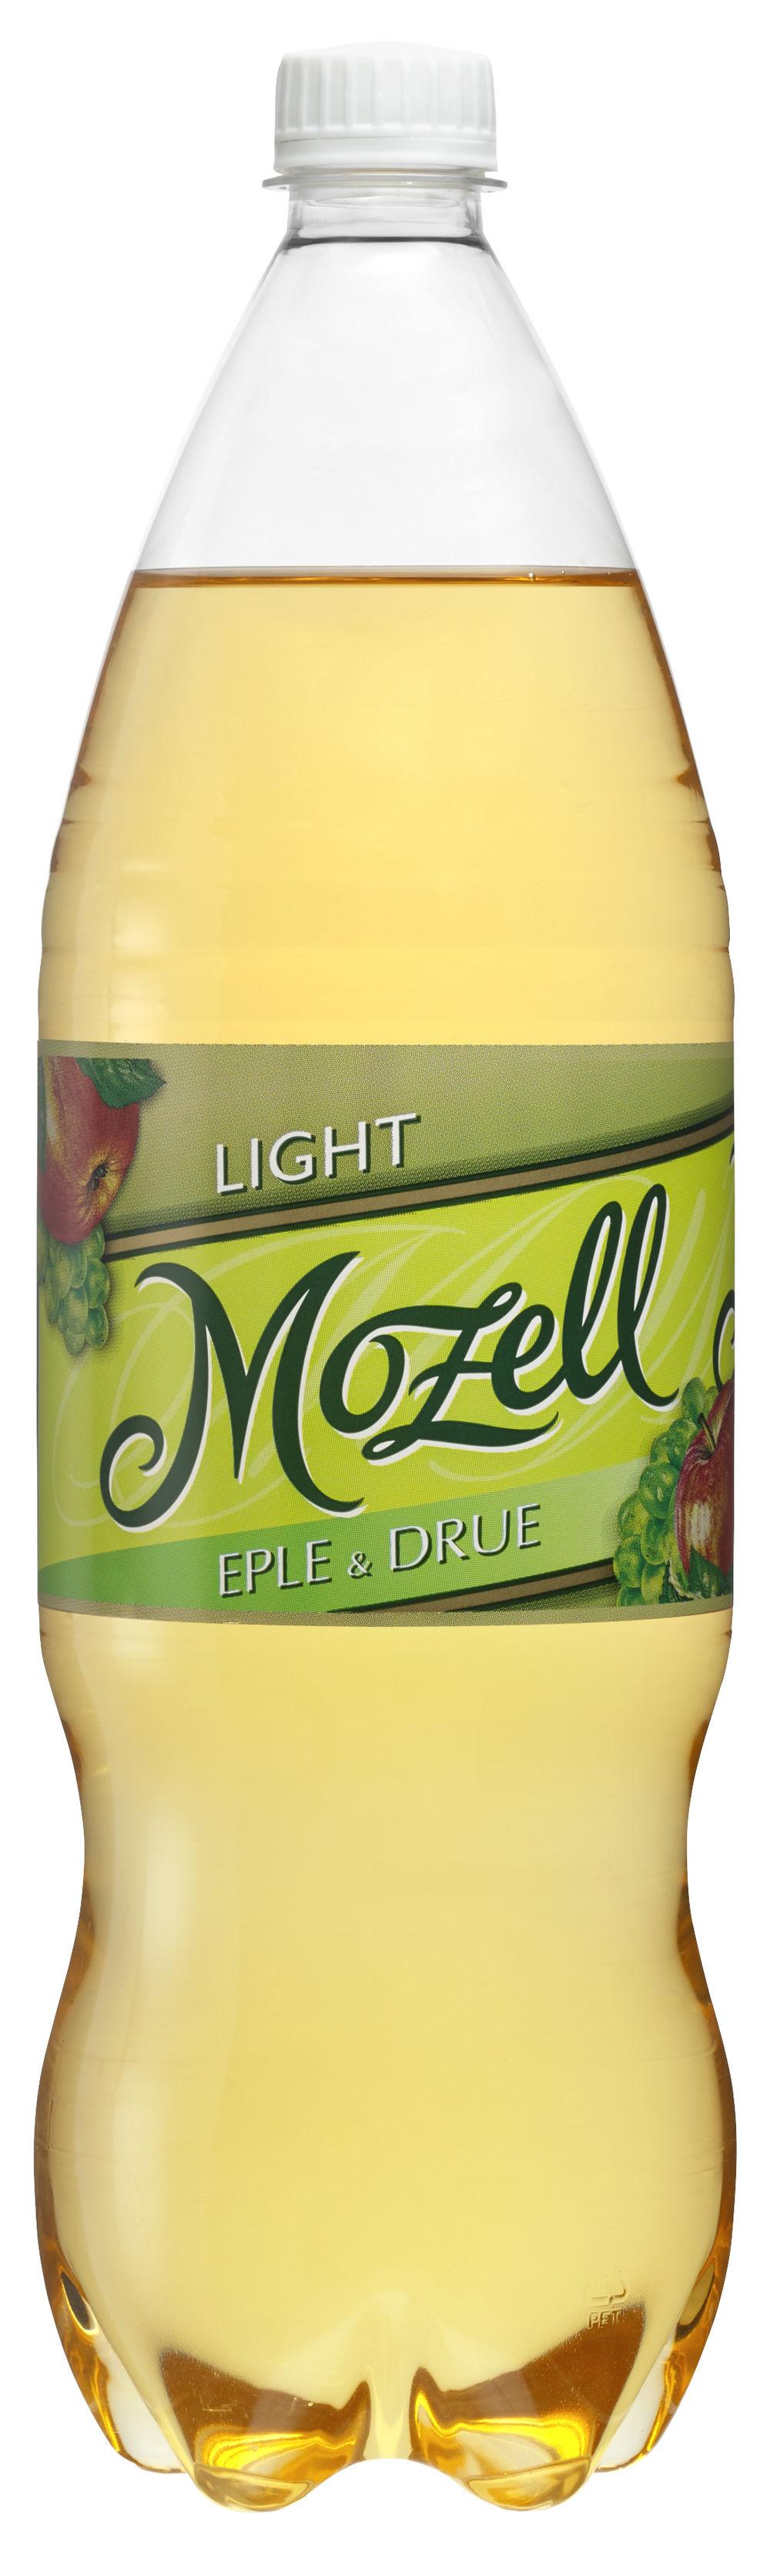 Mozell Drue &amp; Eple Light 1,50 l - inkl. pant